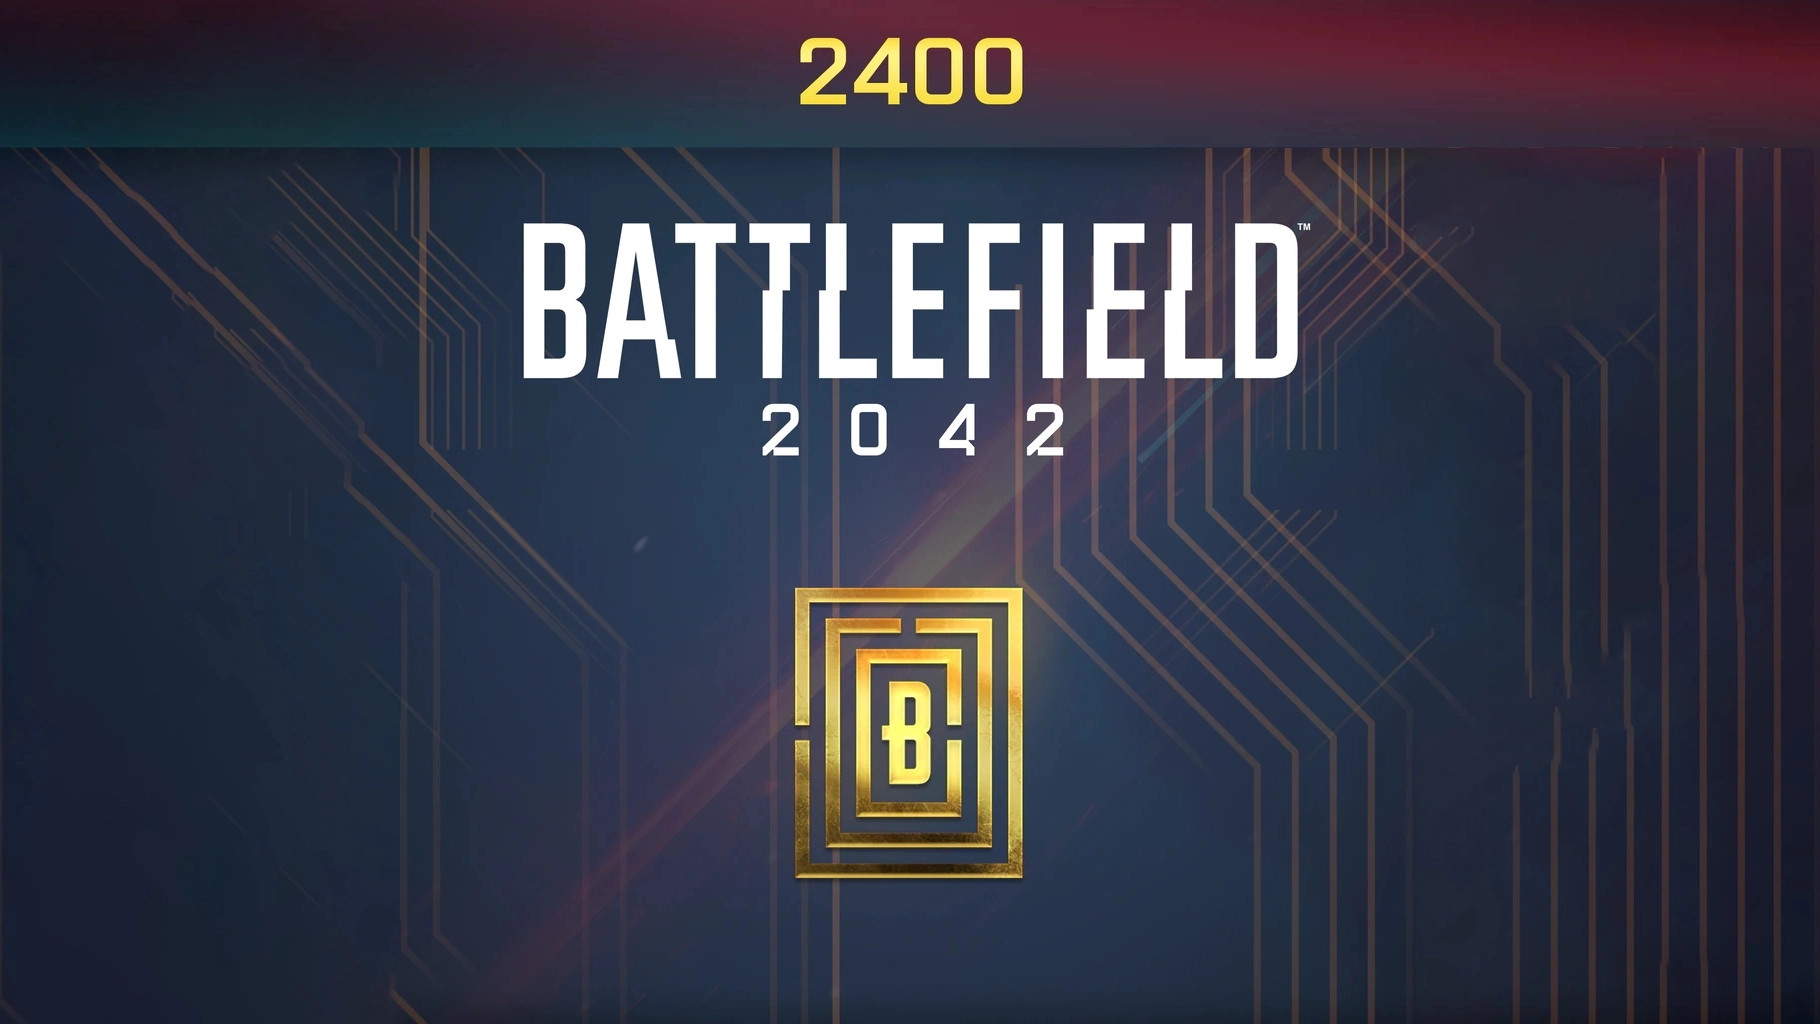 Battlefield 2042 - 2400 BFC Balance XBOX One / Xbox Series X|S CD Key, 20.9$